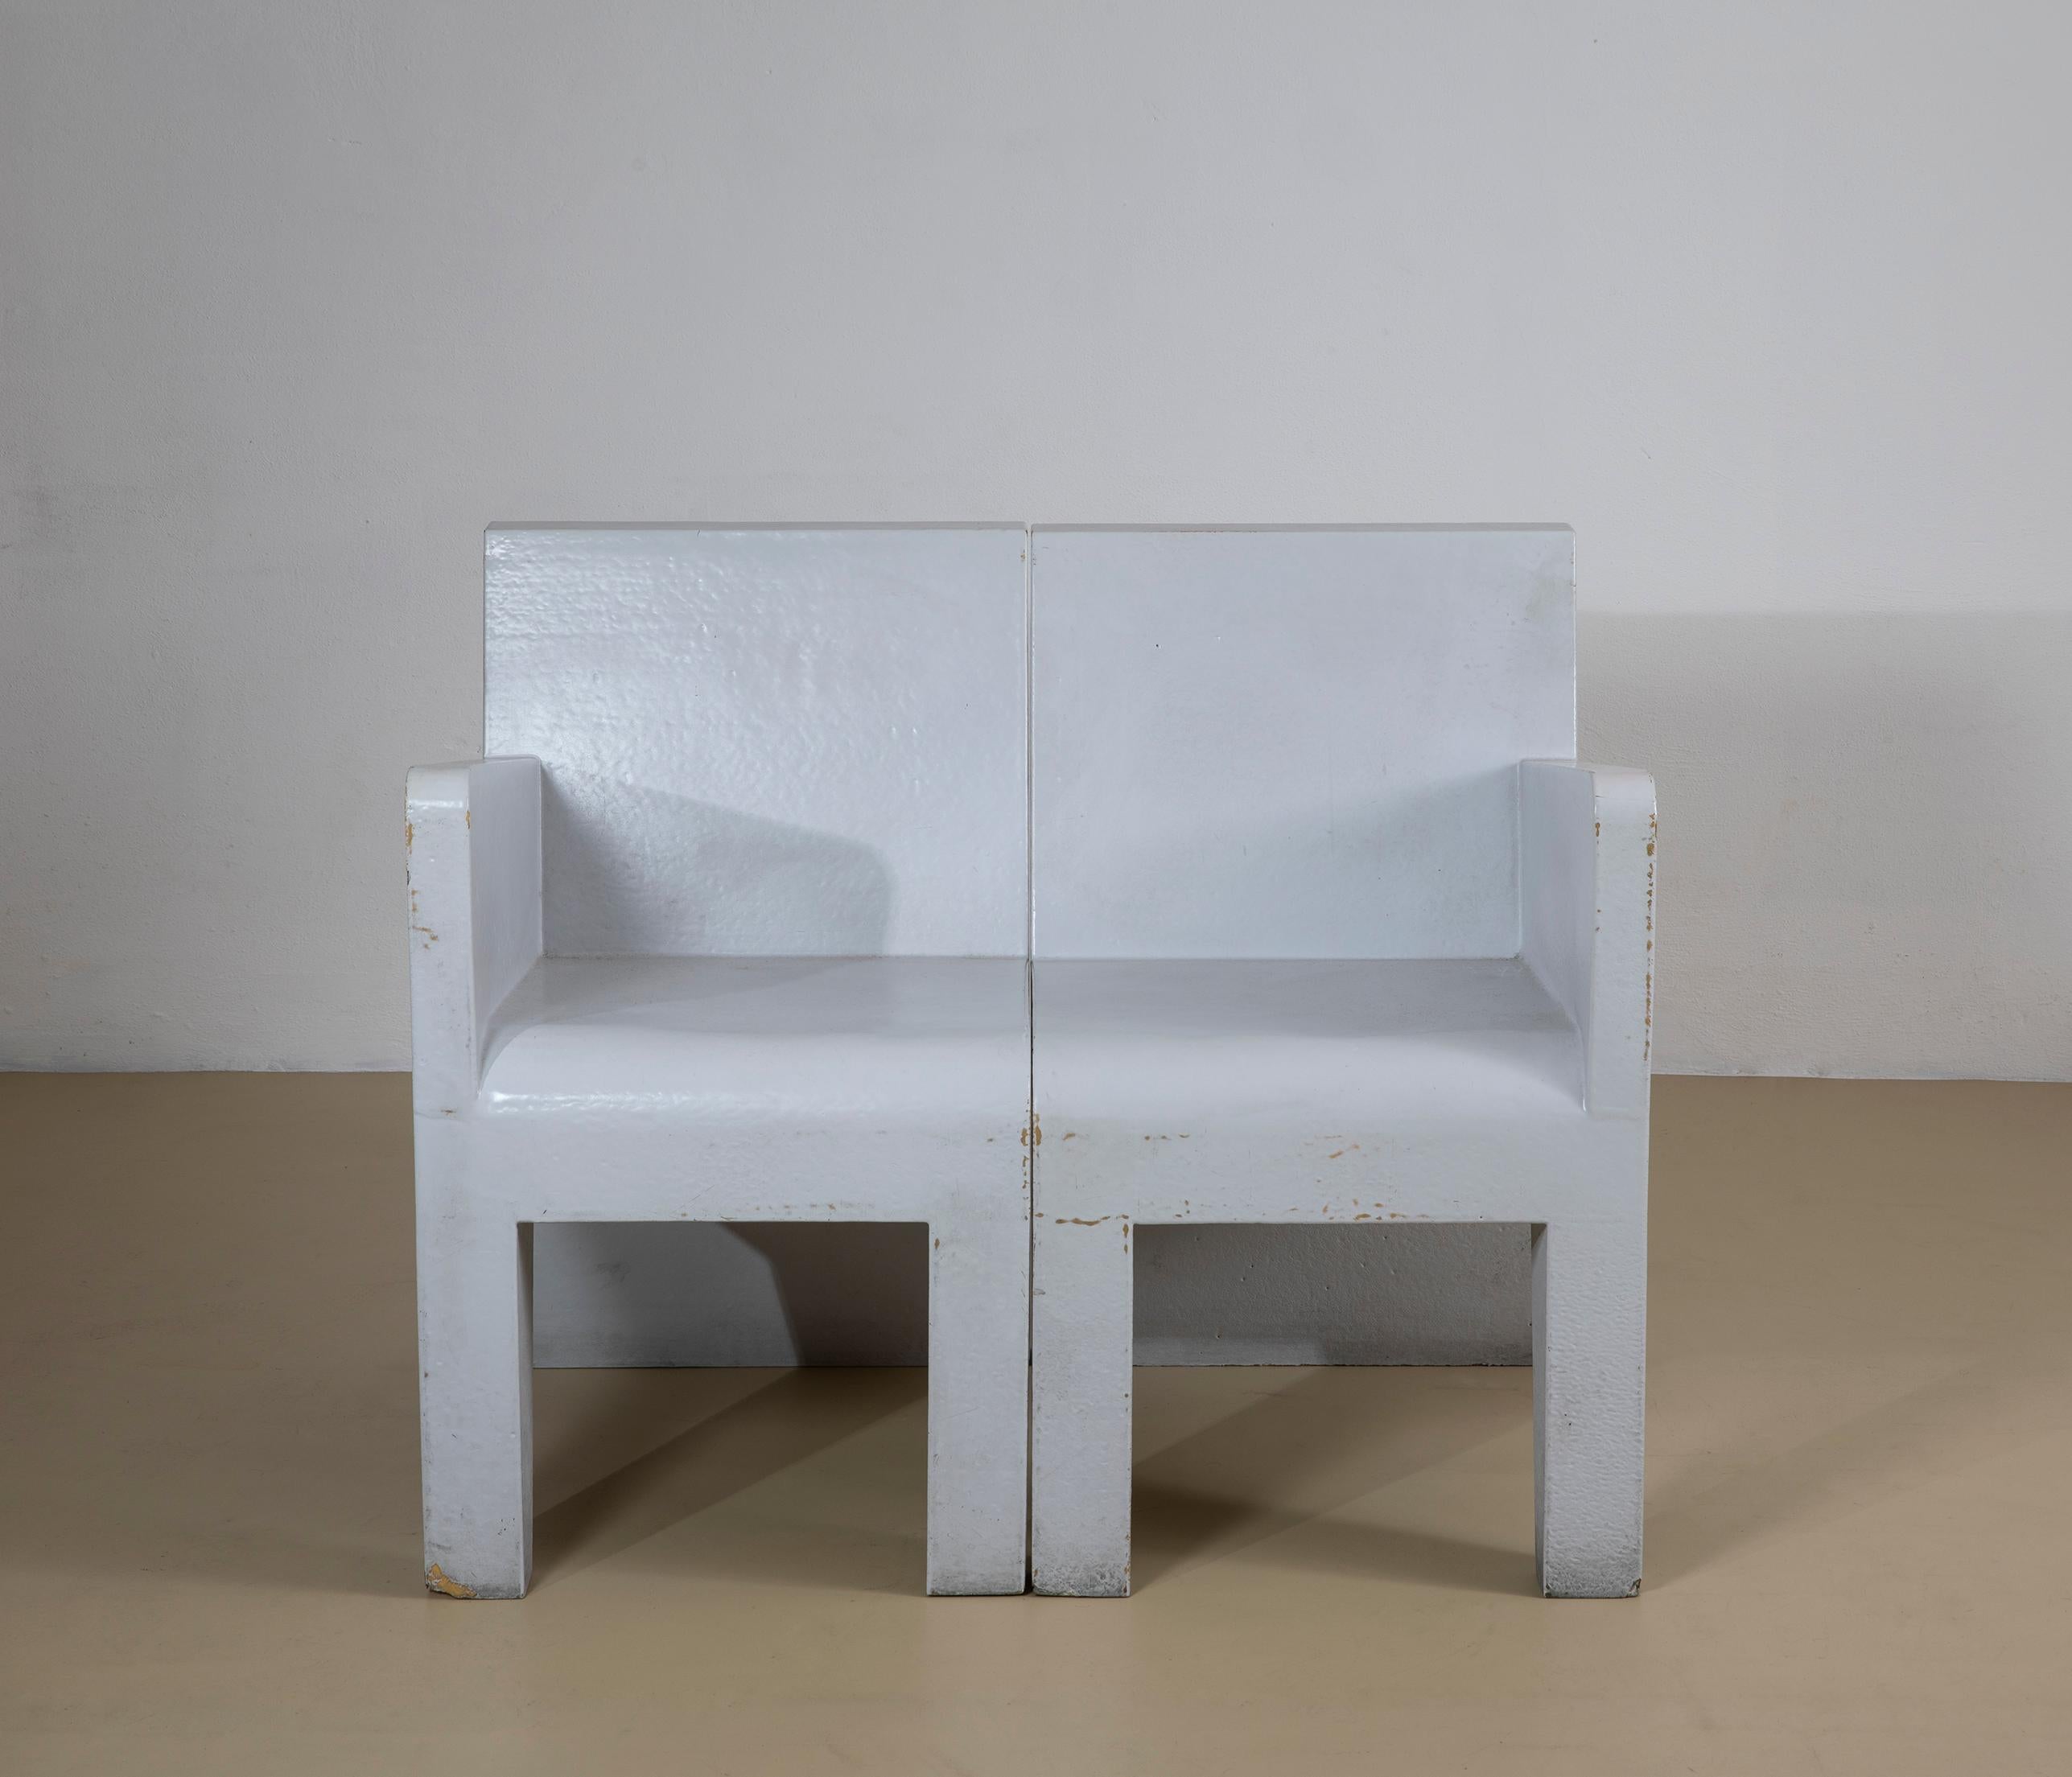 Paire de fauteuils modulaires gris, produits en Italie dans les années 1970. Ils sont fabriqués en résine de verre, en bon état cosmétique et structurel, ils présentent de petits défauts d'utilisation près des pieds, visibles sur la photo. 